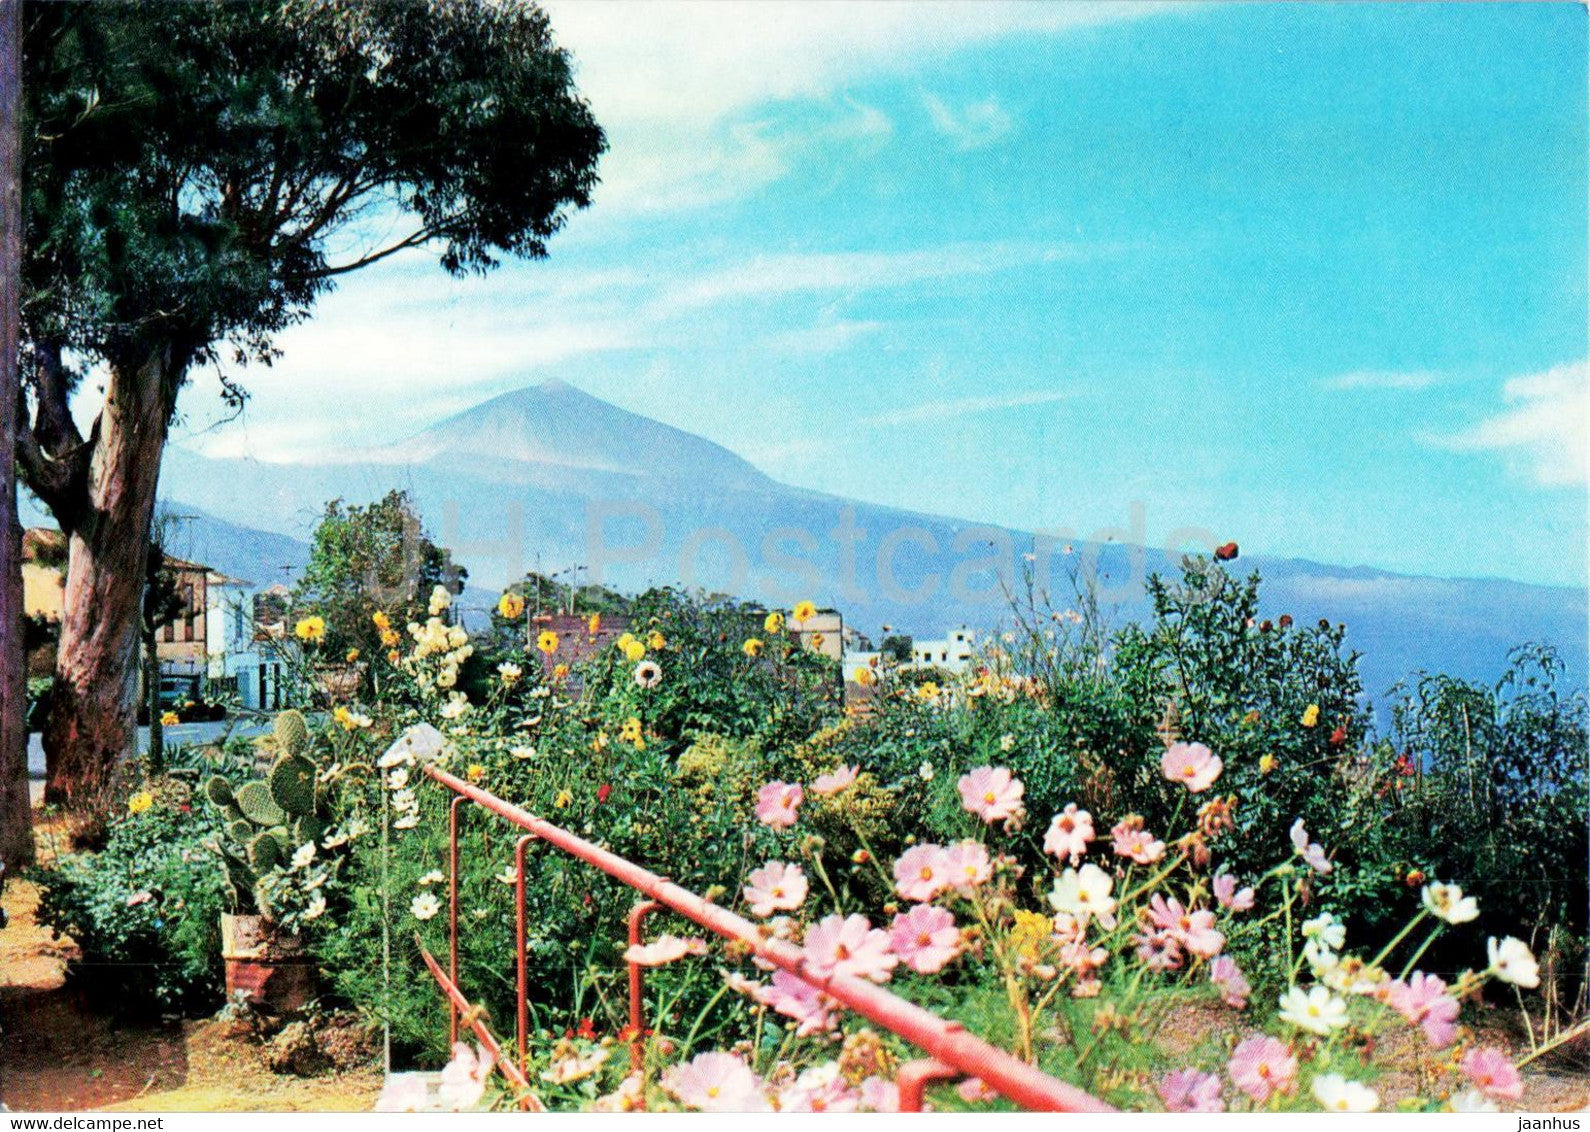 Tenerife - Paisaje tipico - typical countryside - 359 - Spain - unused - JH Postcards